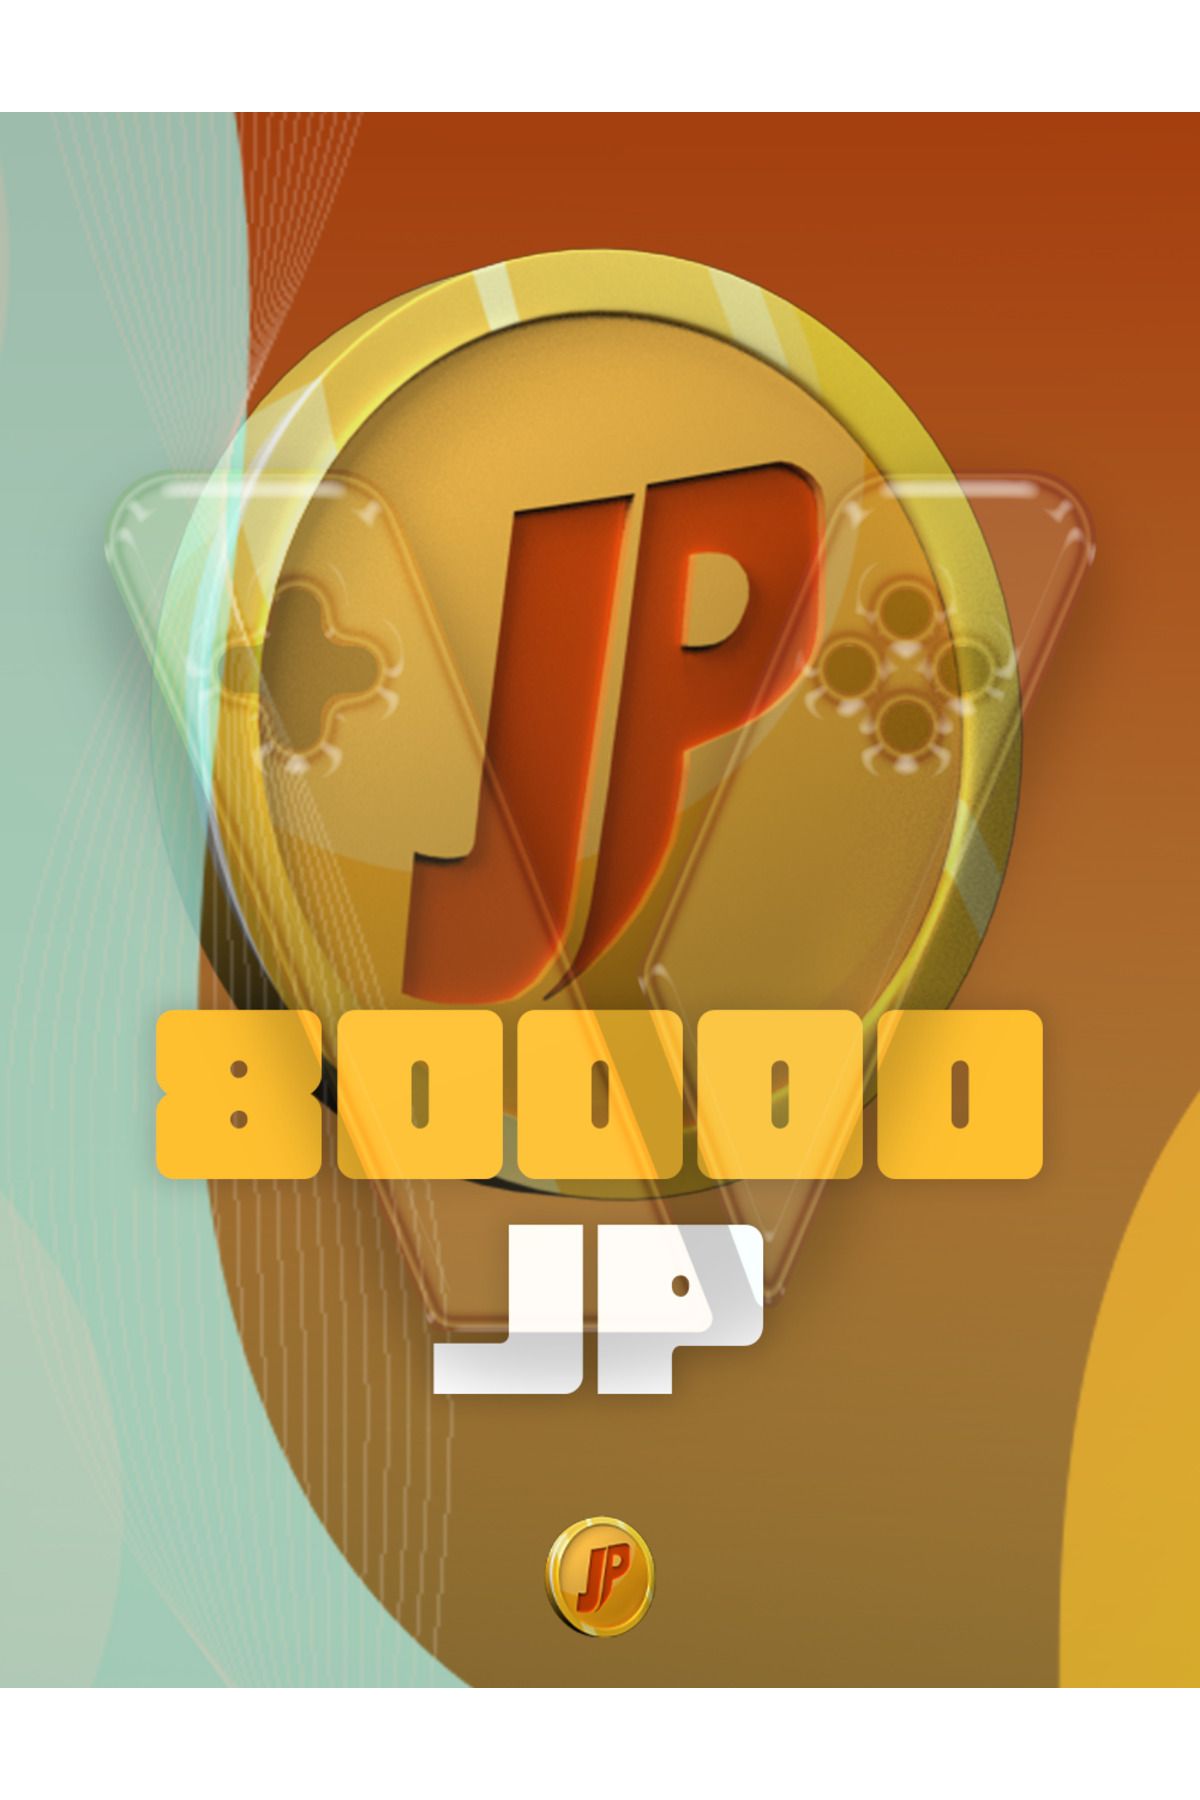 Joygame 80,000 Joypara